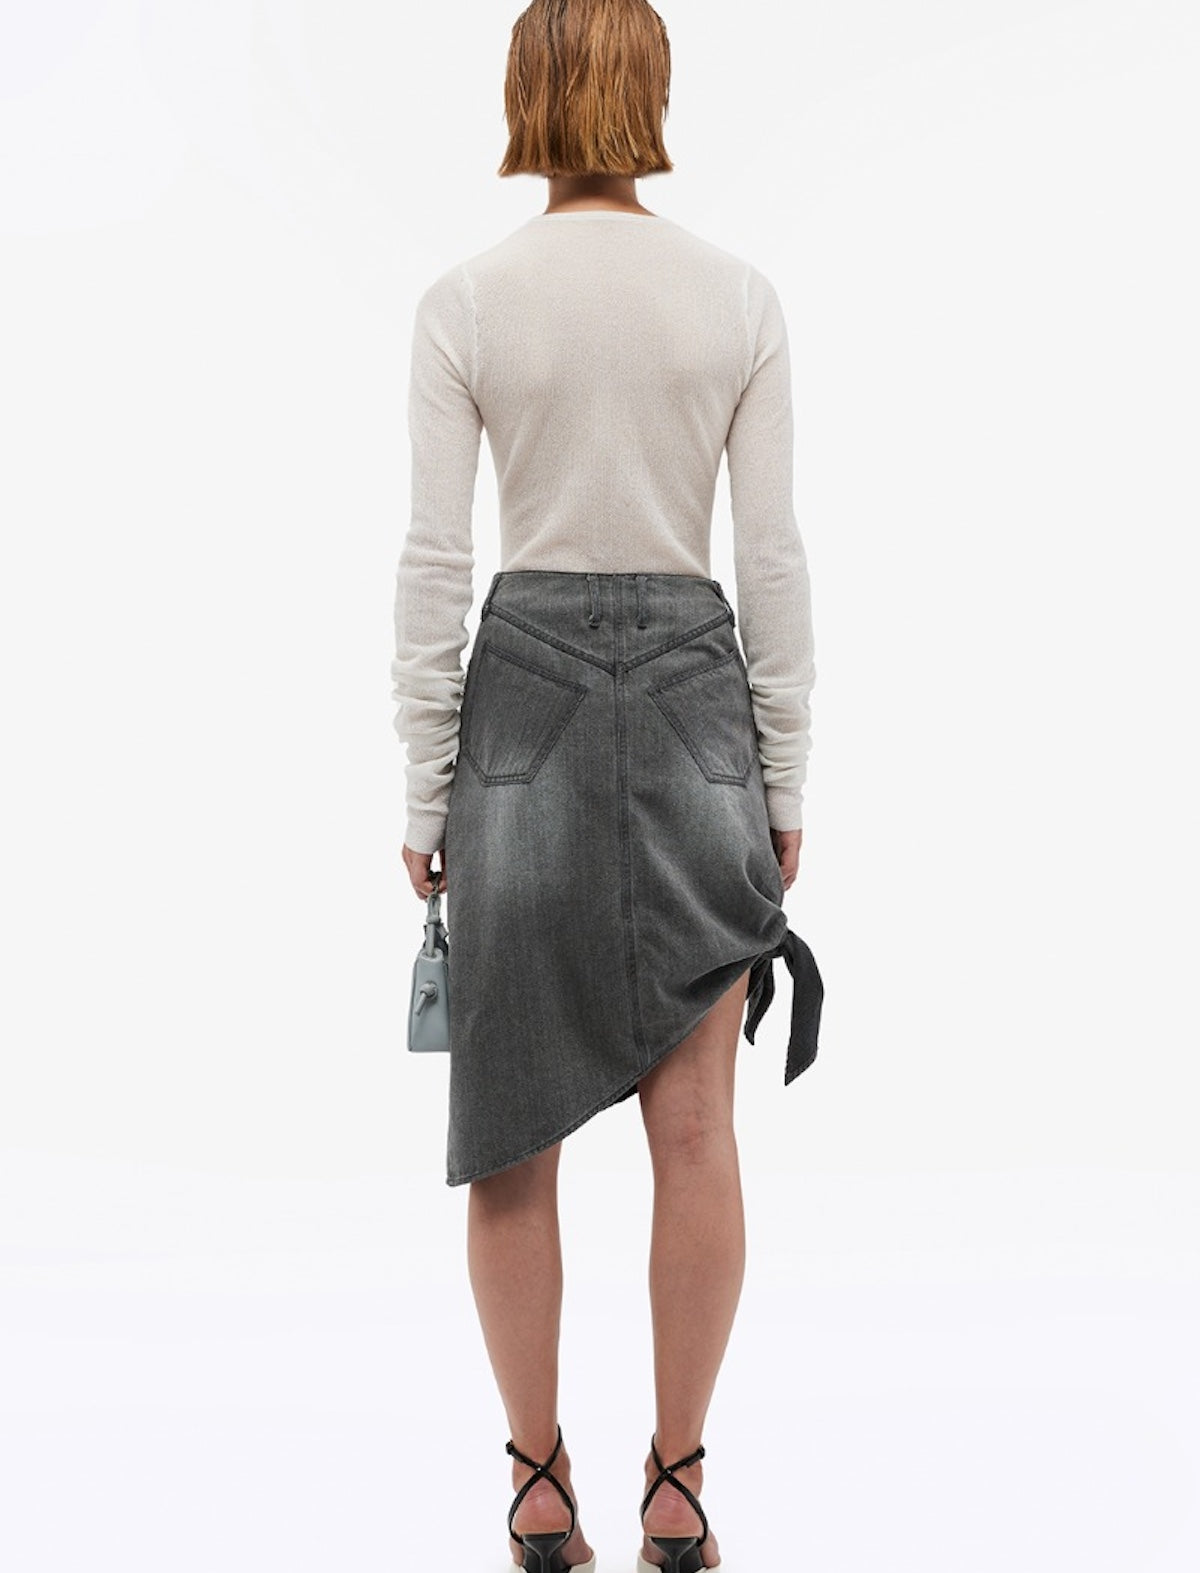 REMAIN Drapy Denim Skirt in Silver Filigree